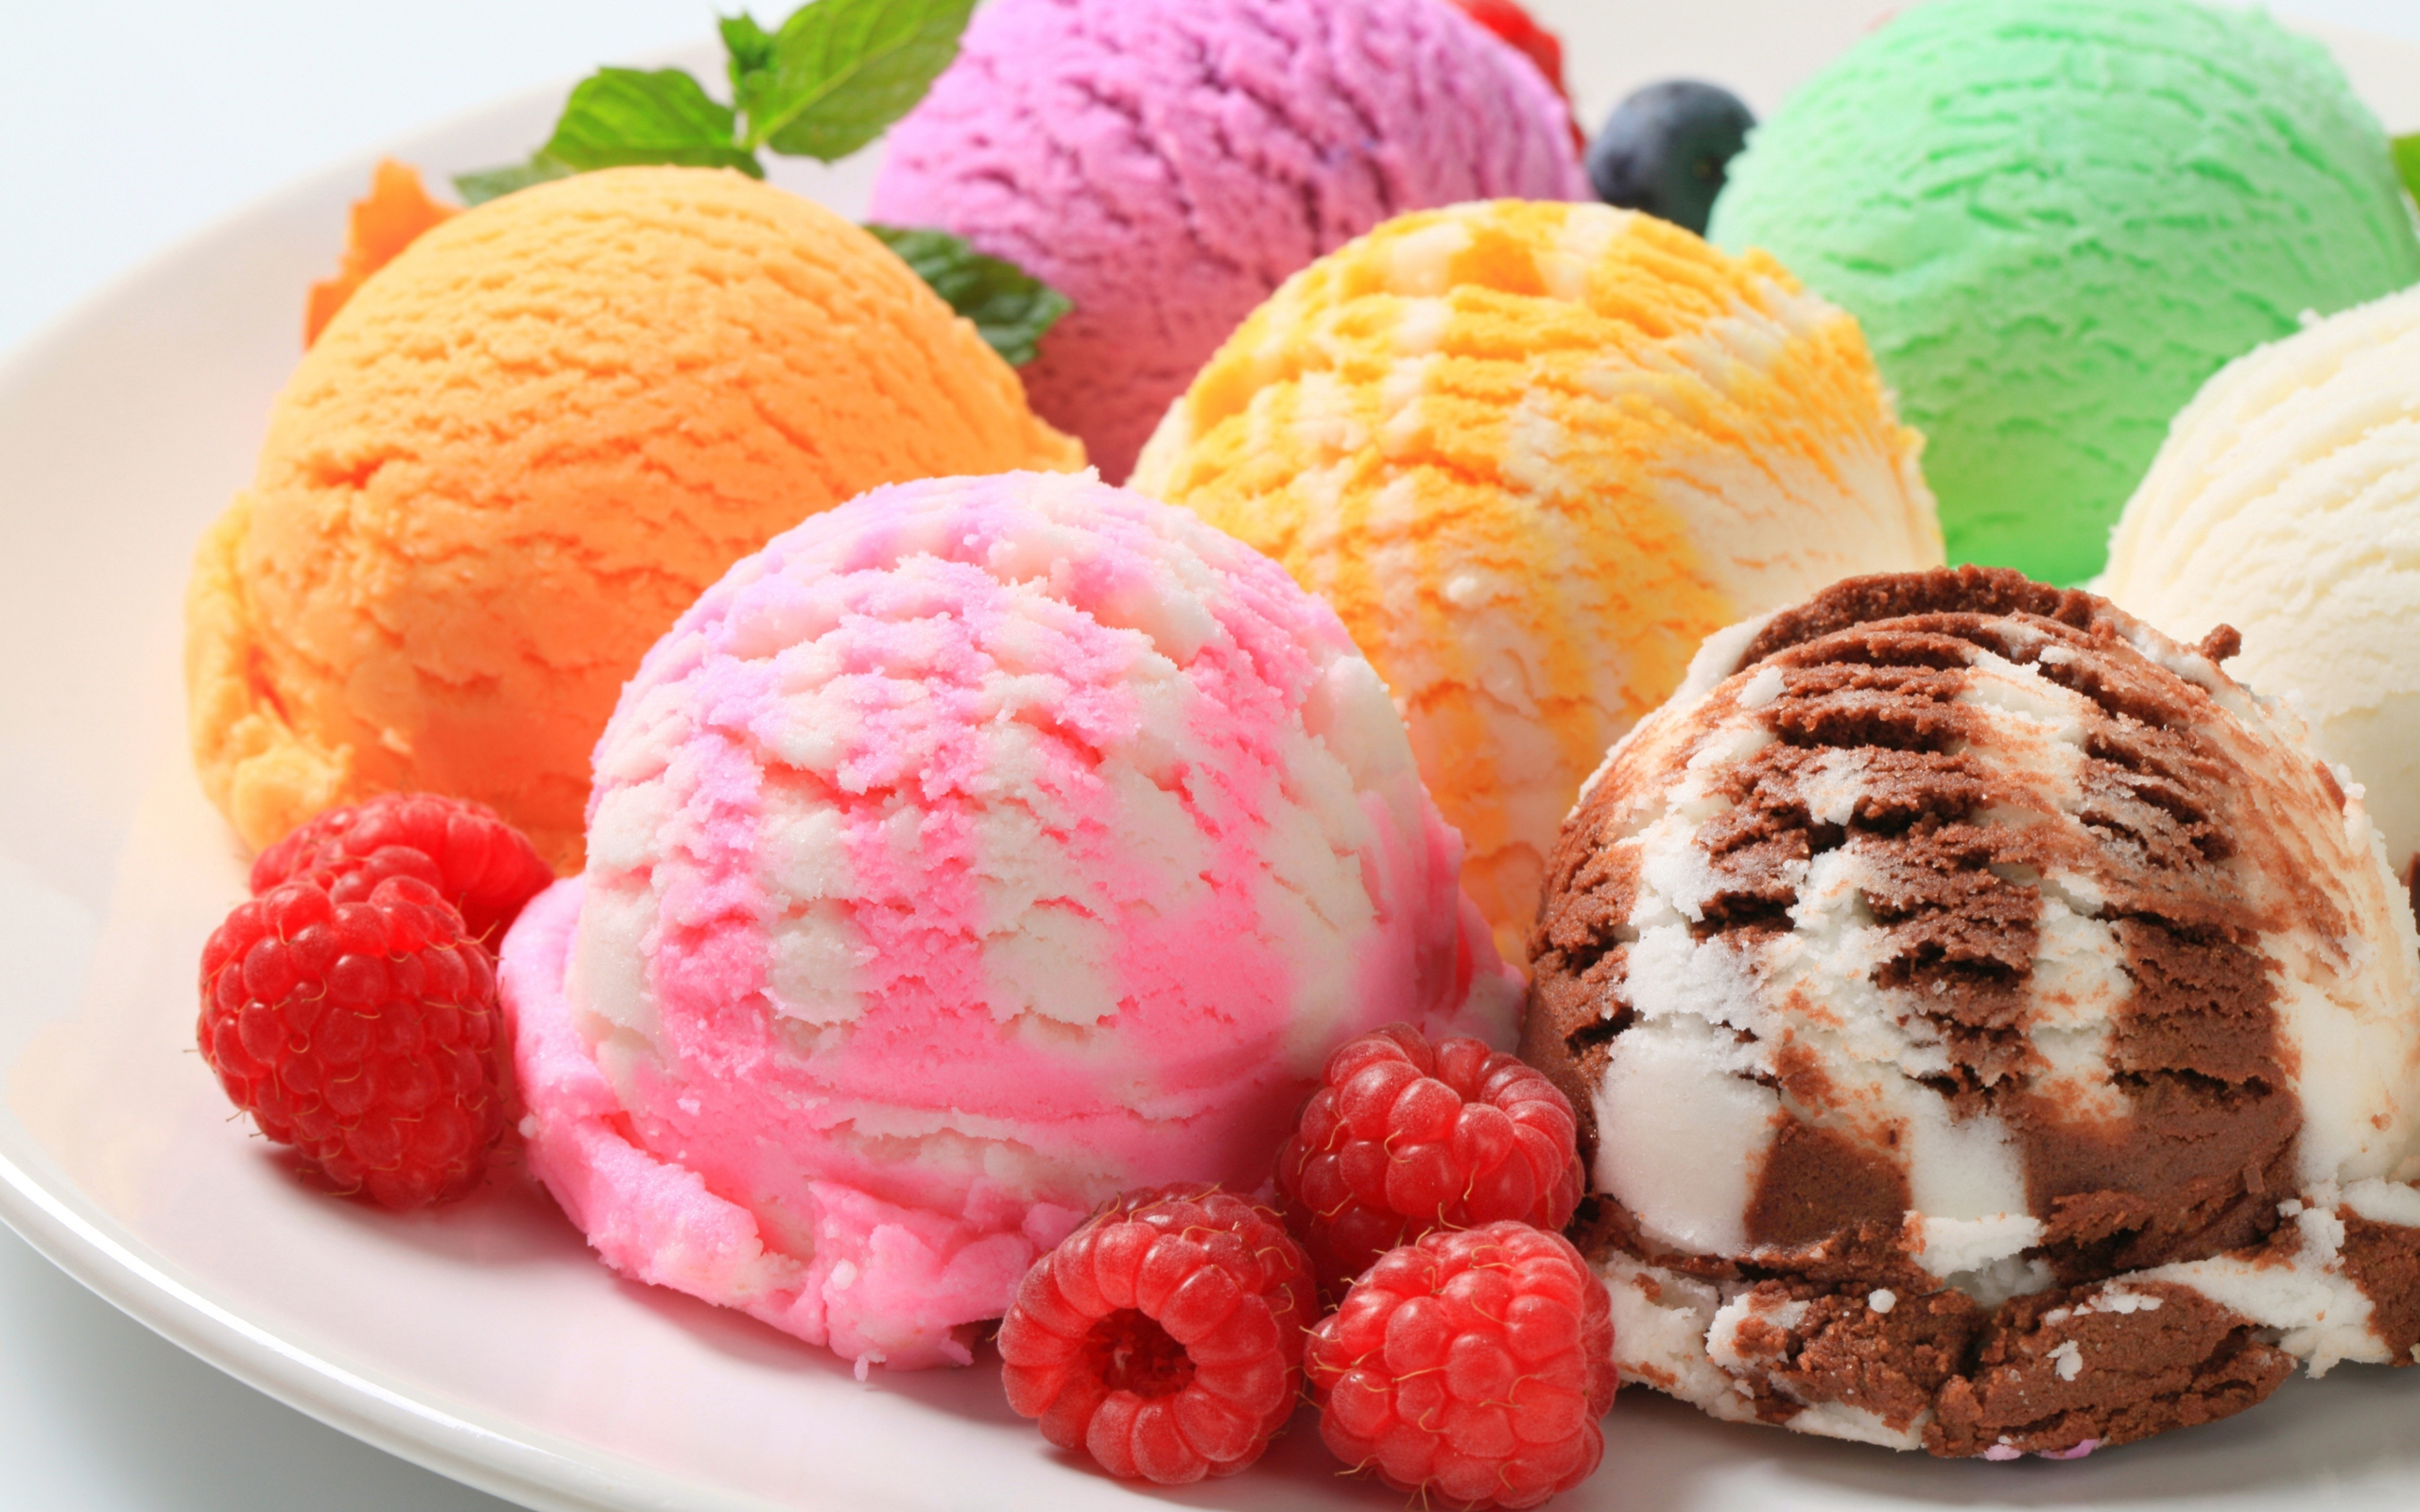 Диетическое мороженое, 7 низкокалорийных рецептов для диет